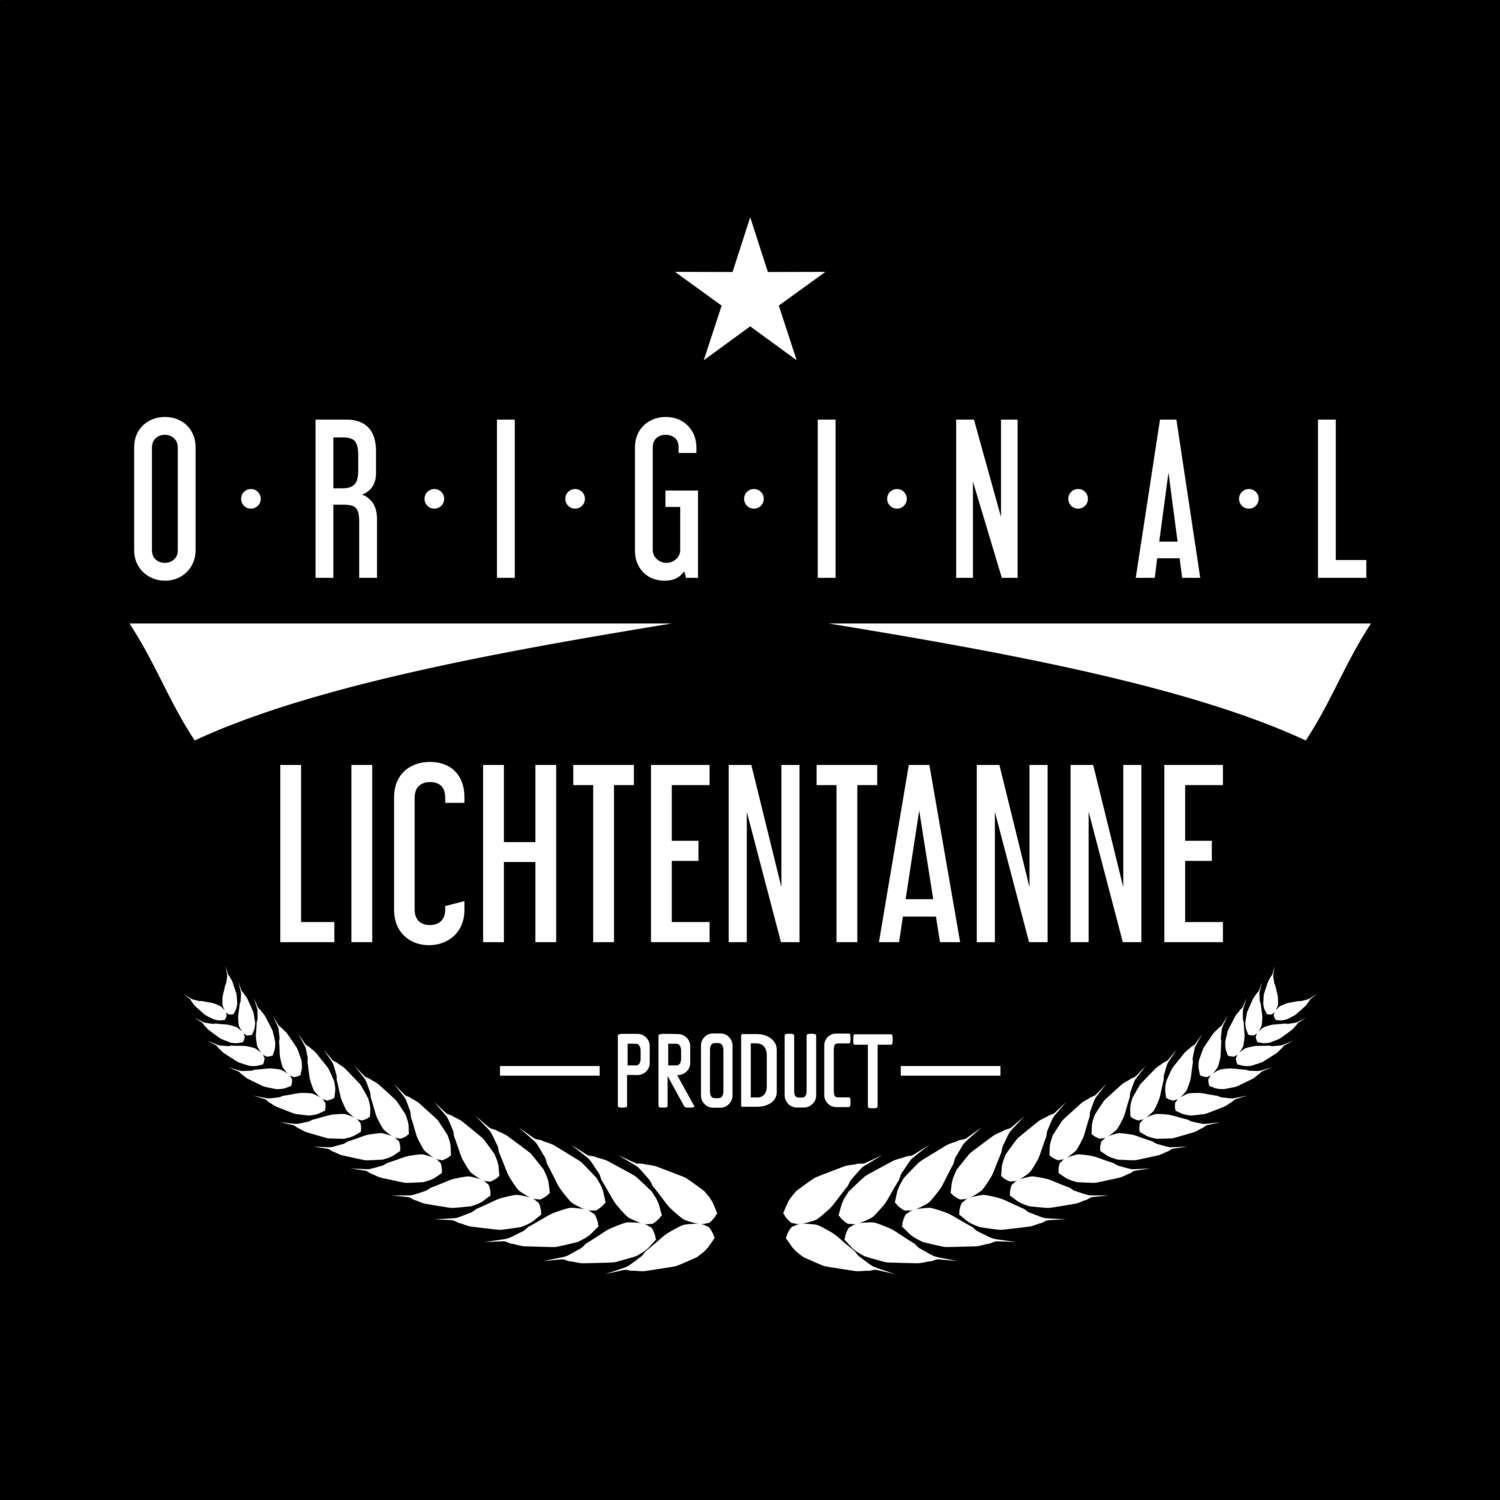 Lichtentanne T-Shirt »Original Product«